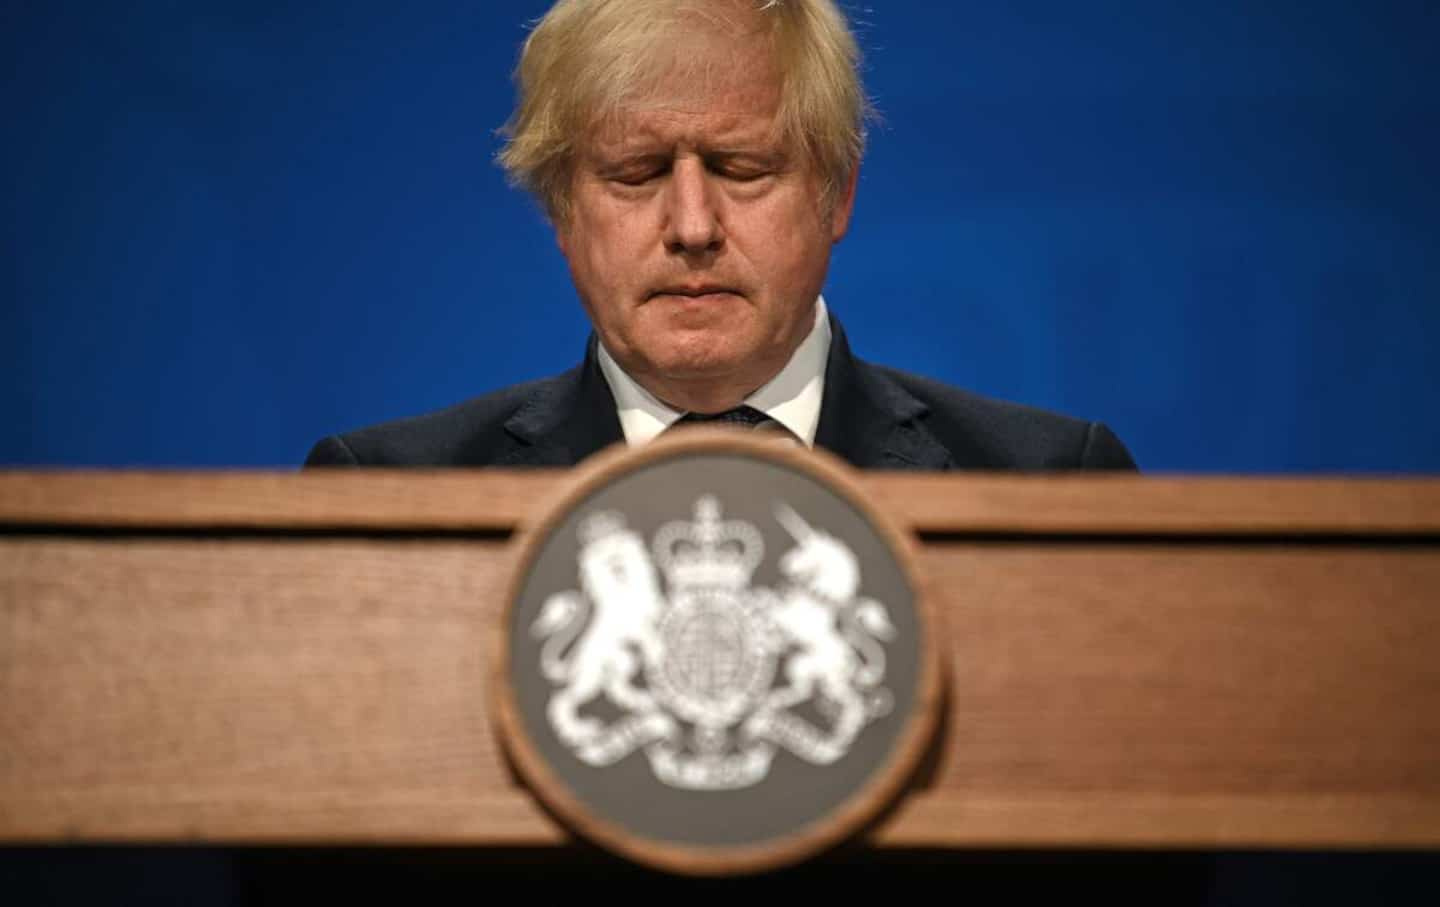 Boris Johnson, three turbulent years in power